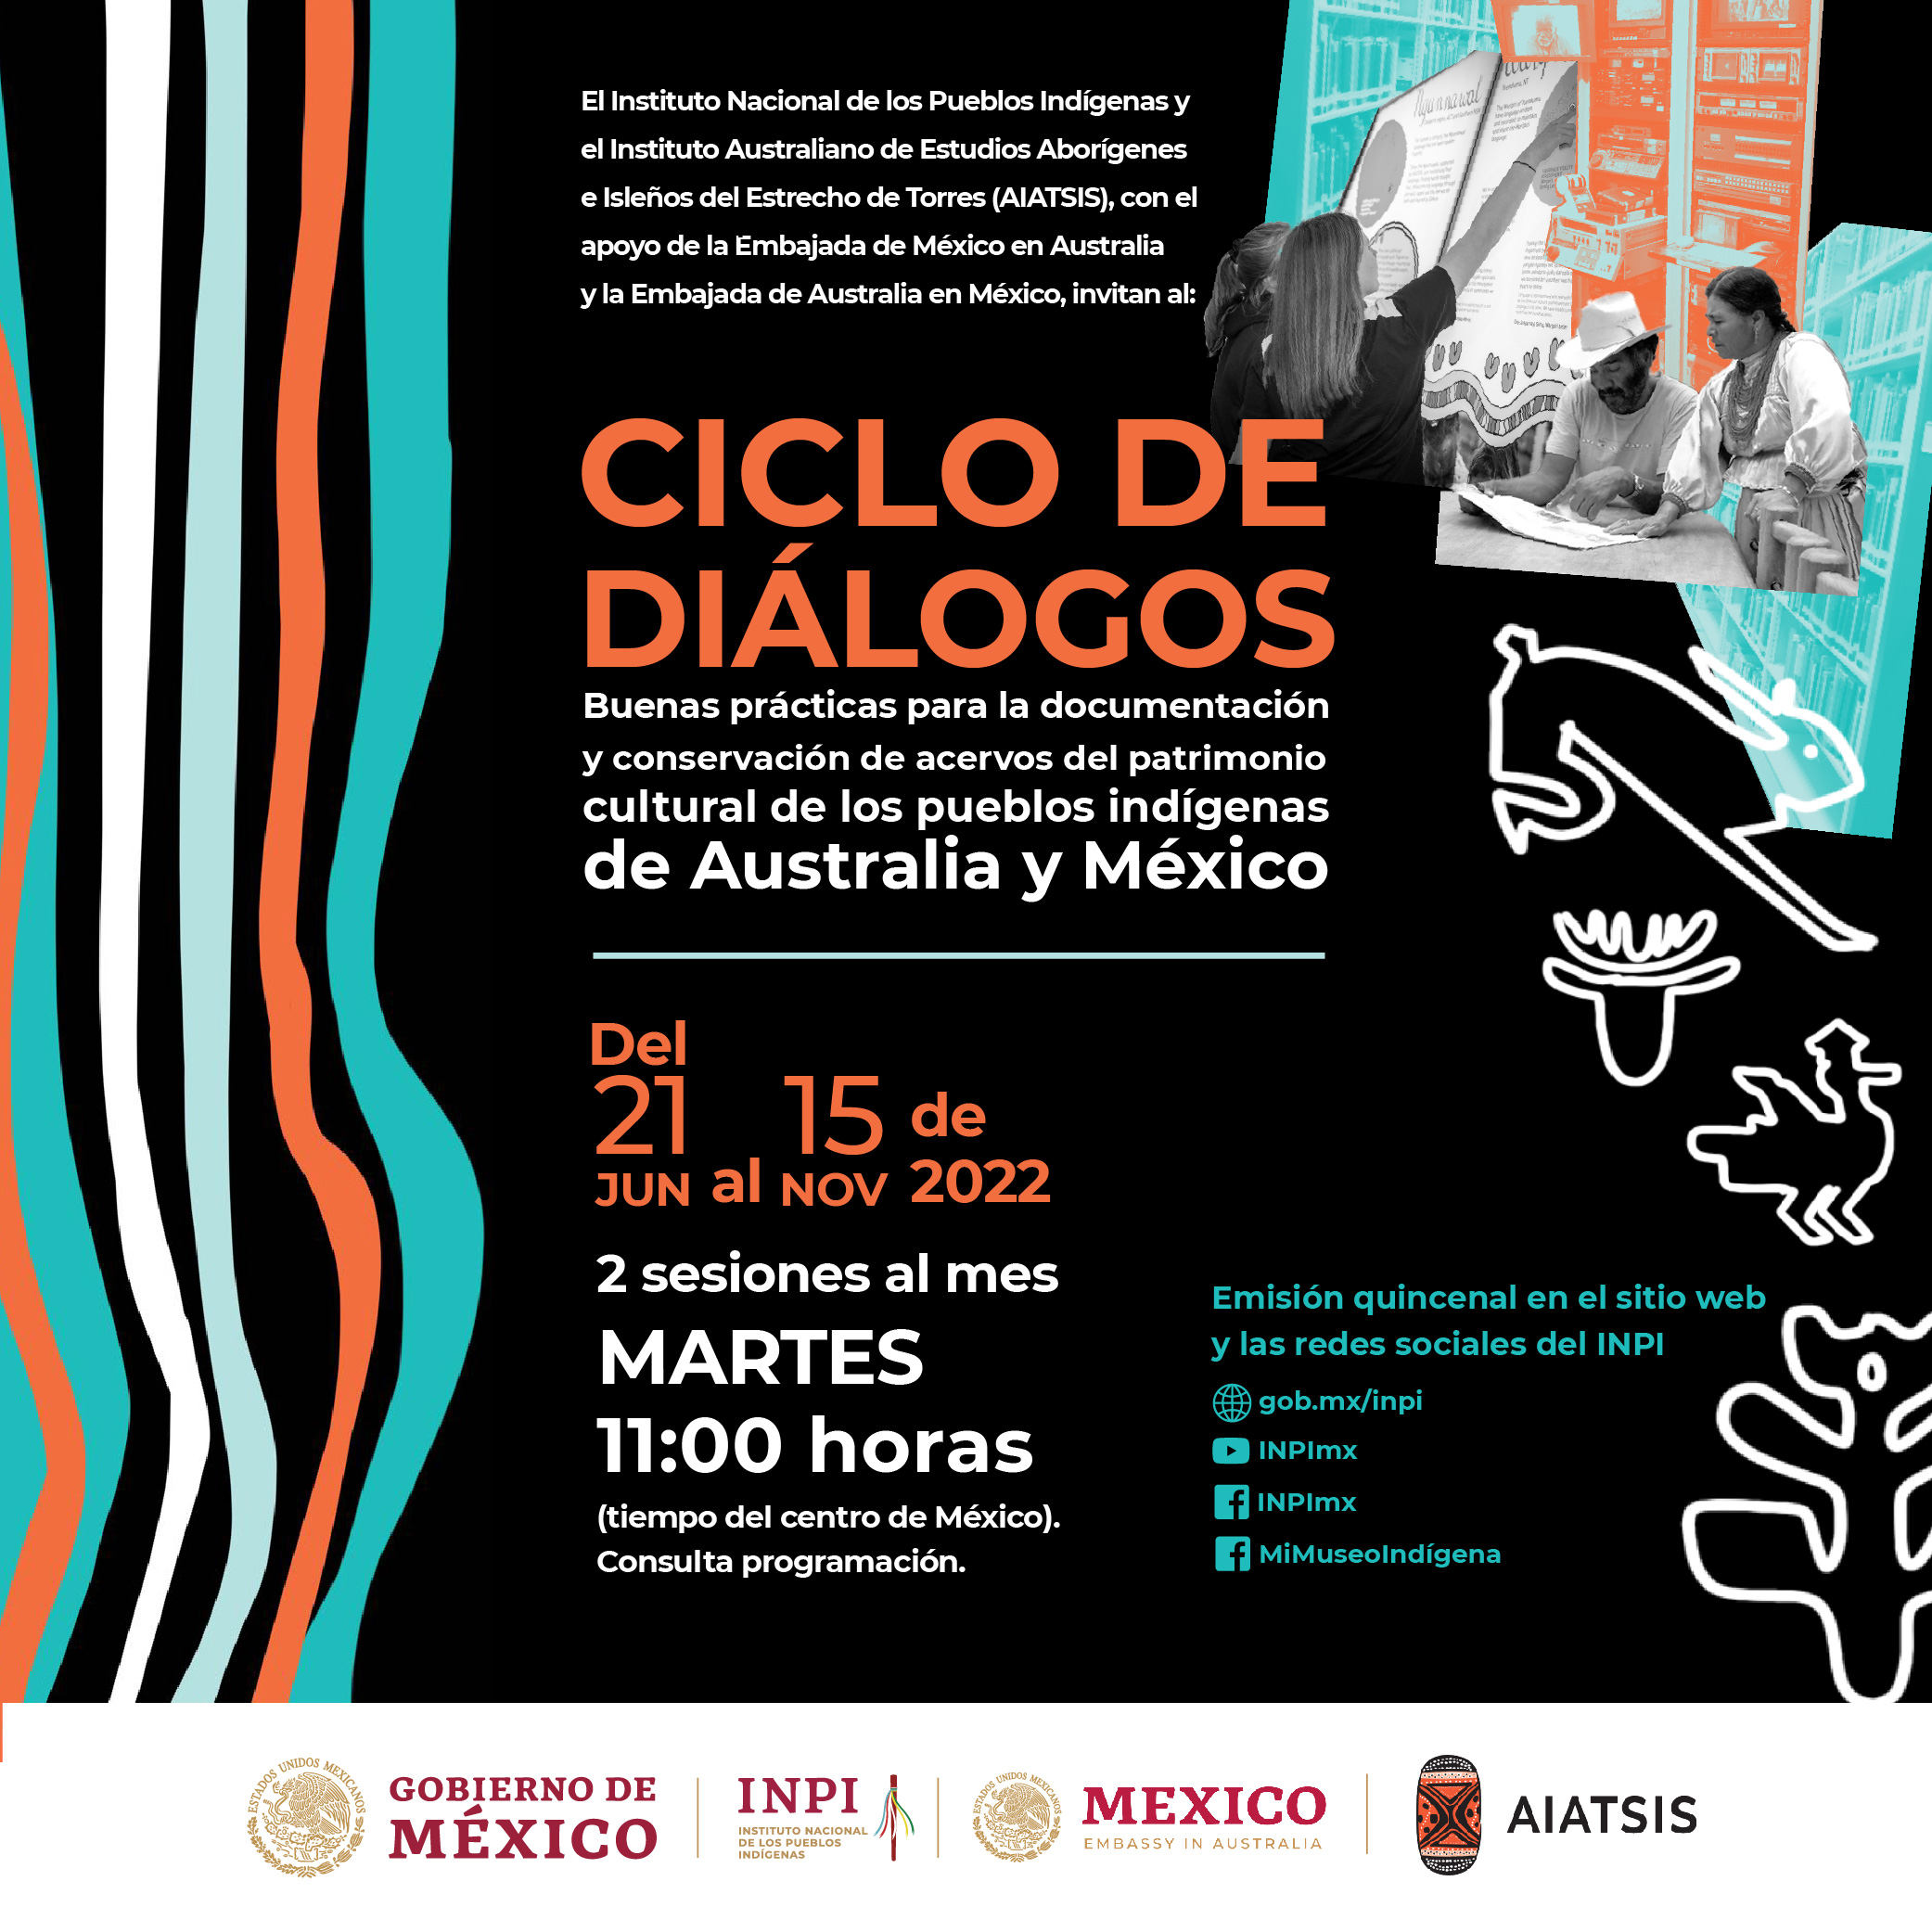 Ciclo de Diálogos "Buenas prácticas para la documentación y conservación de acervos del patrimonio cultural de los pueblos indígenas de Australia y México".